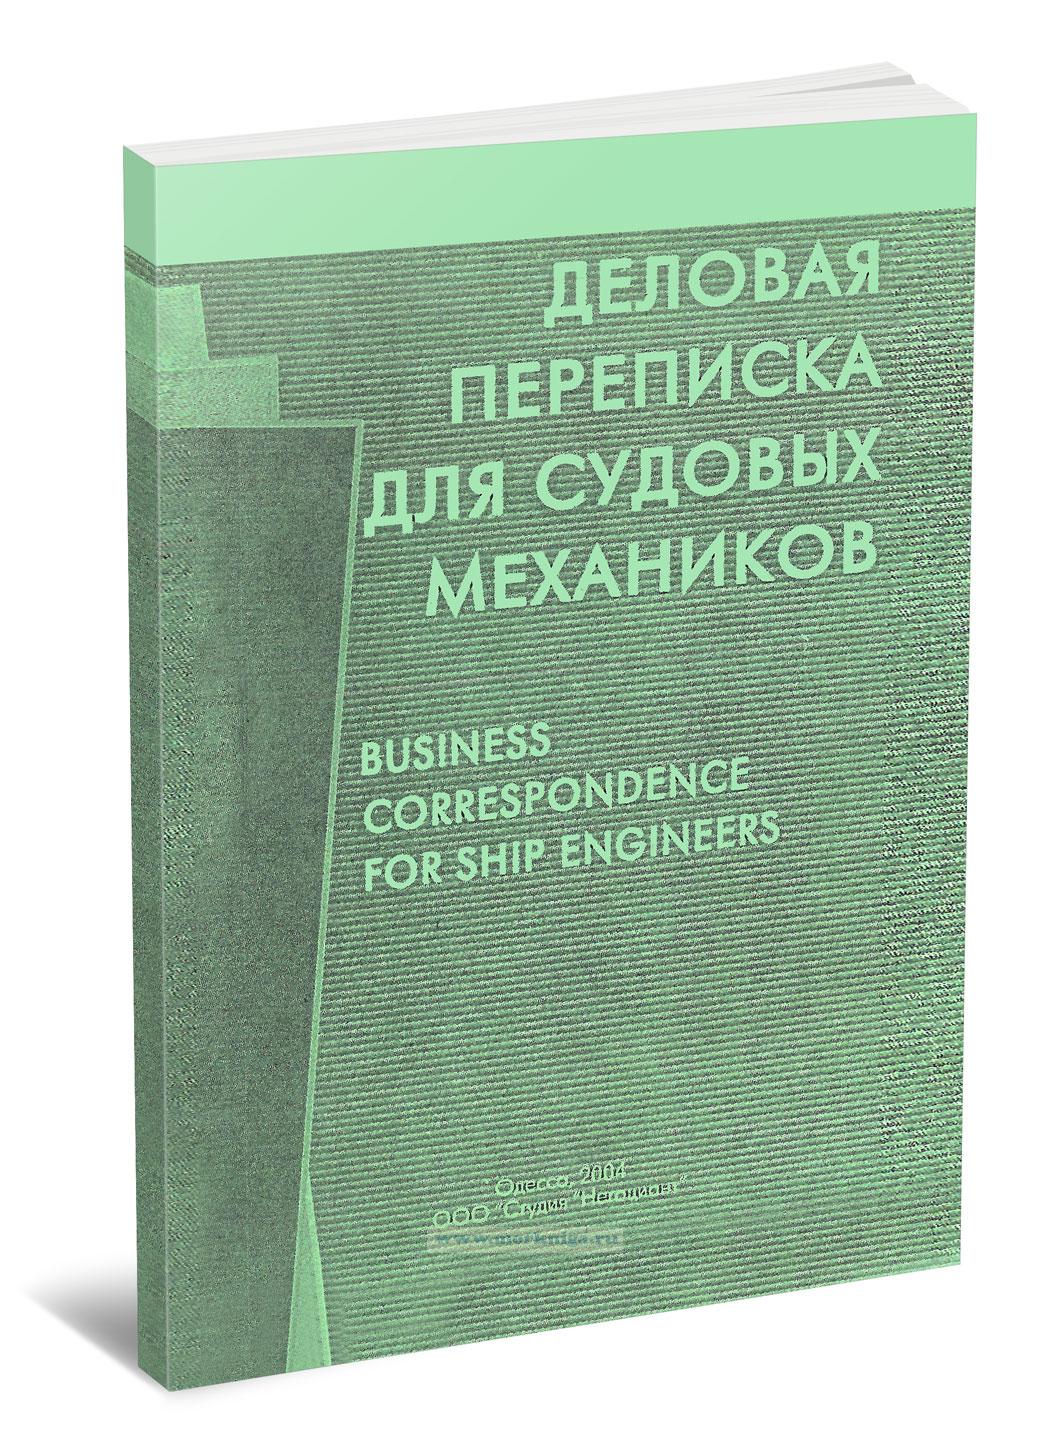 Деловая переписка для судовых механиков. Business correspondence for ship engineers. Пособие на русском и английском языках.